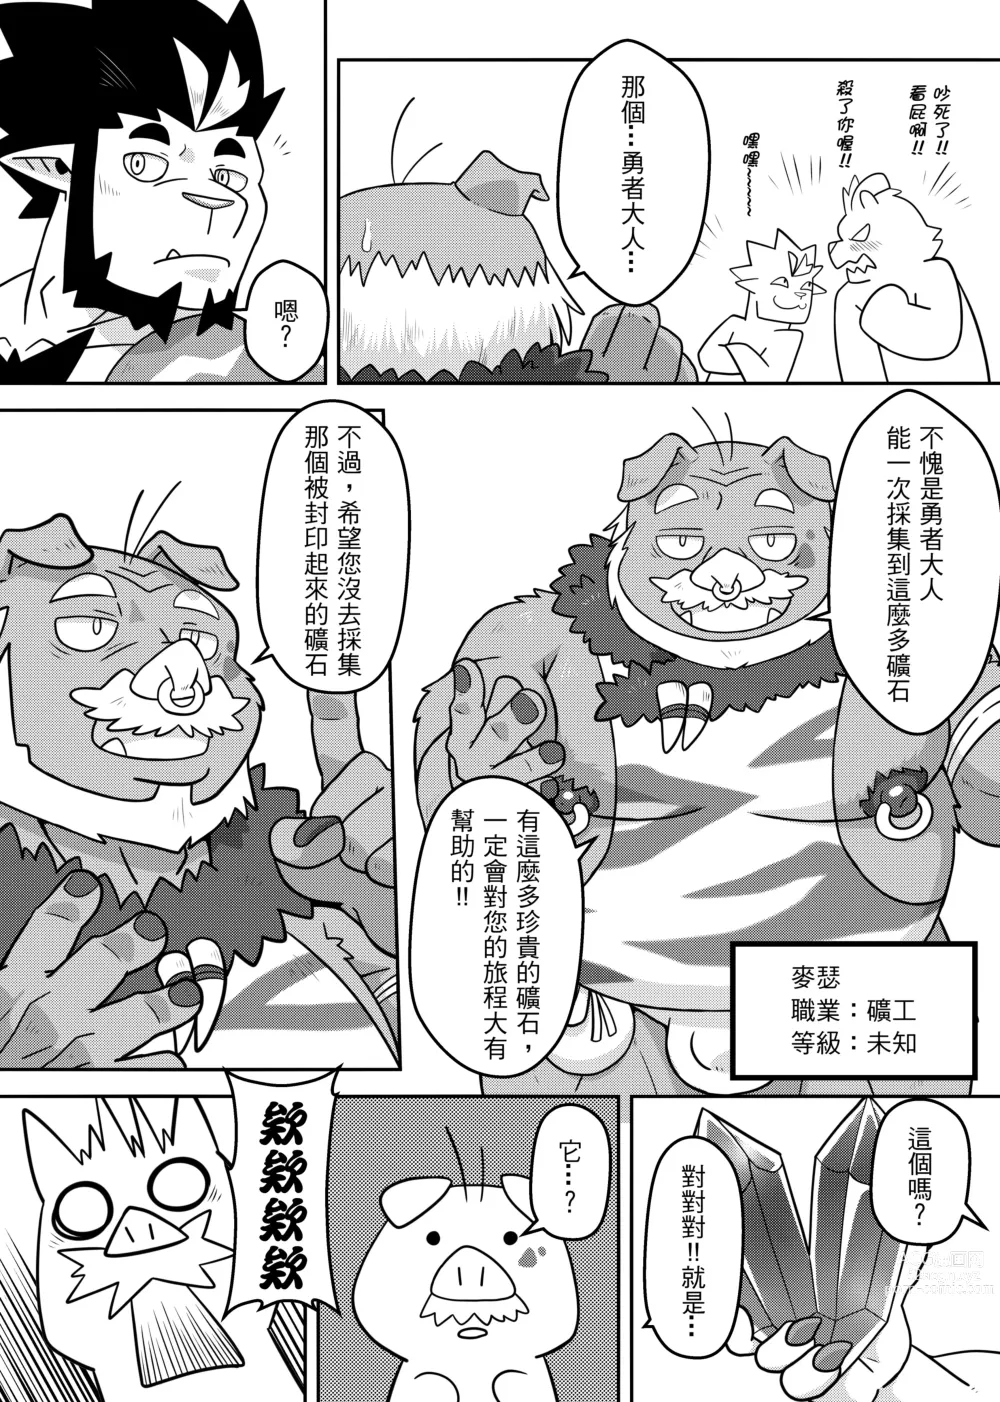 Page 6 of doujinshi 勇者的大小只有魔王塞得下3